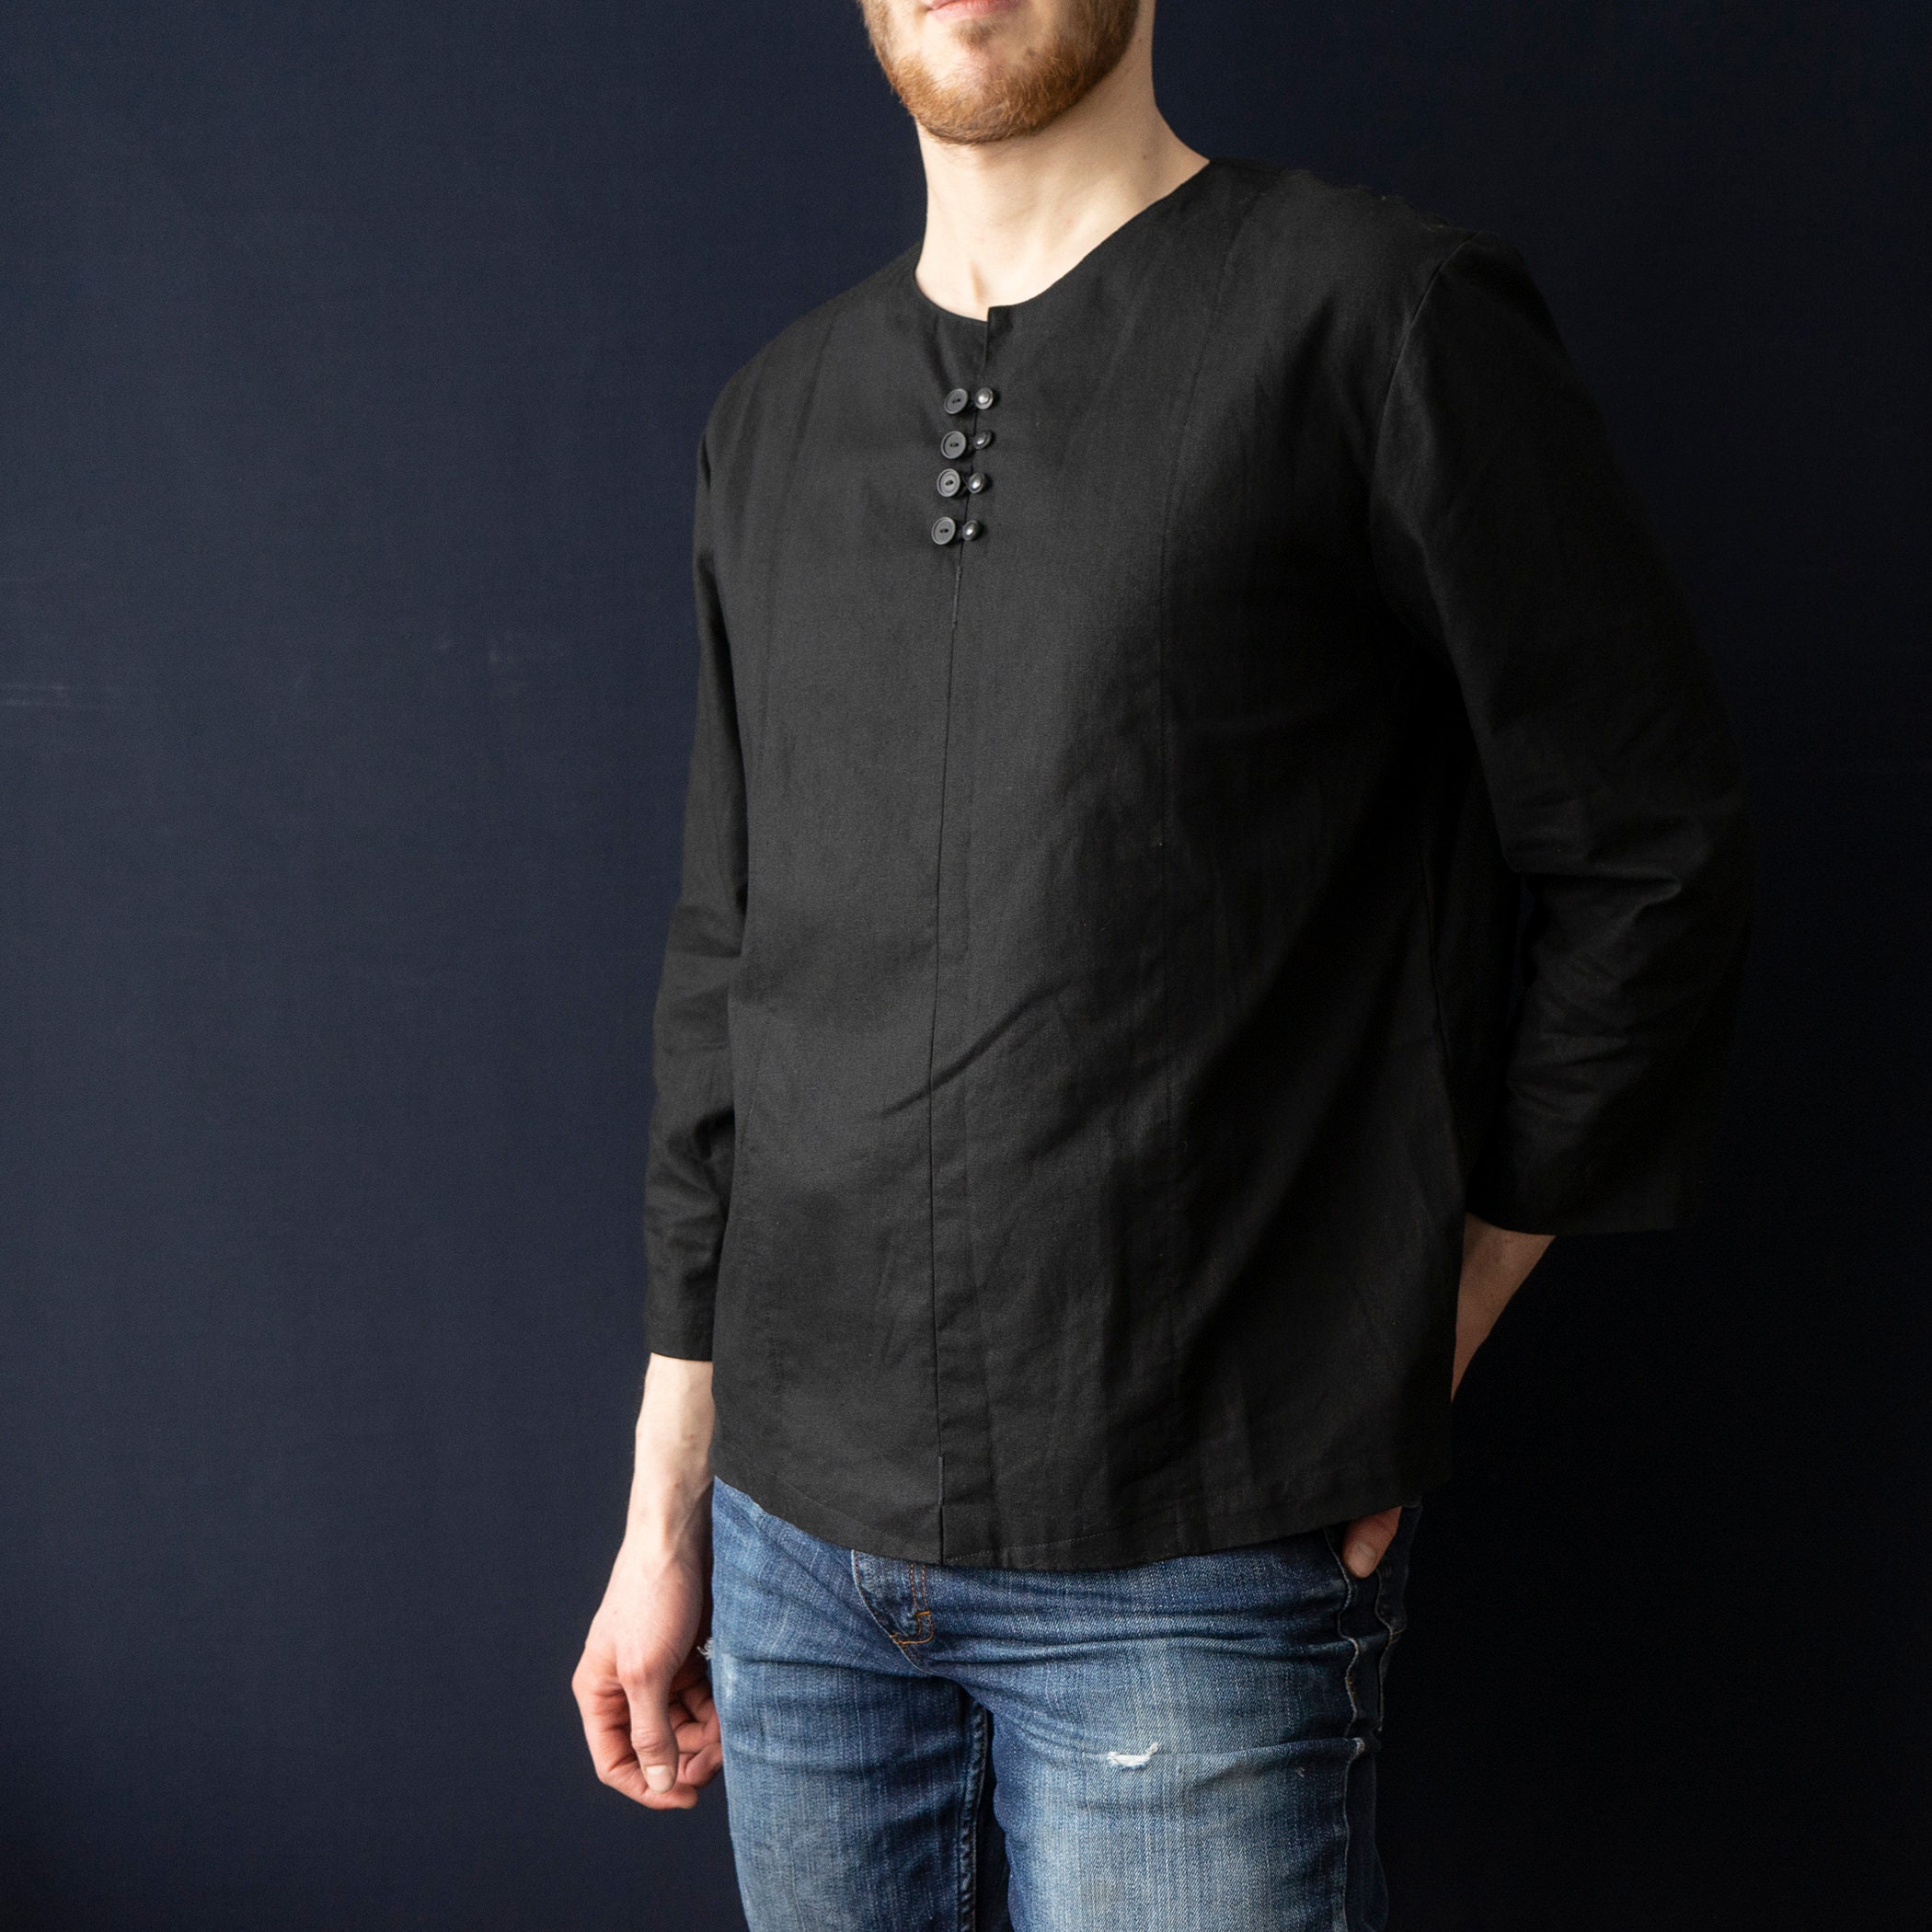 Men's black linen shirt. Tunic for men | Etsy